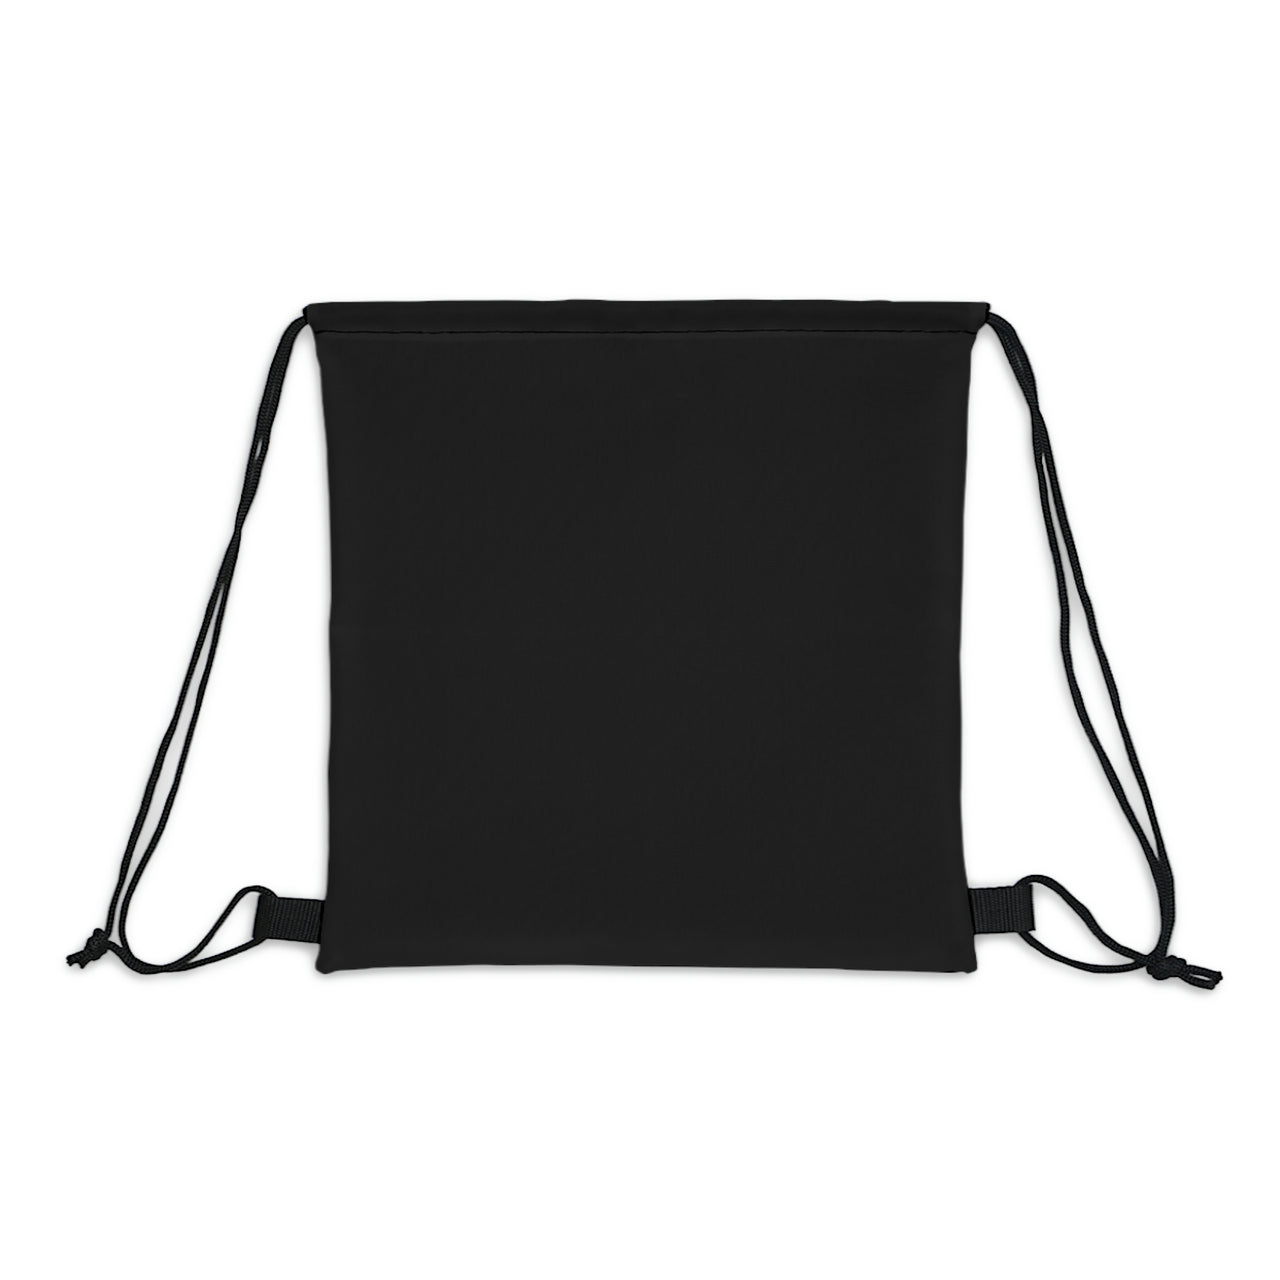 JBoss- Outdoor Drawstring Bag